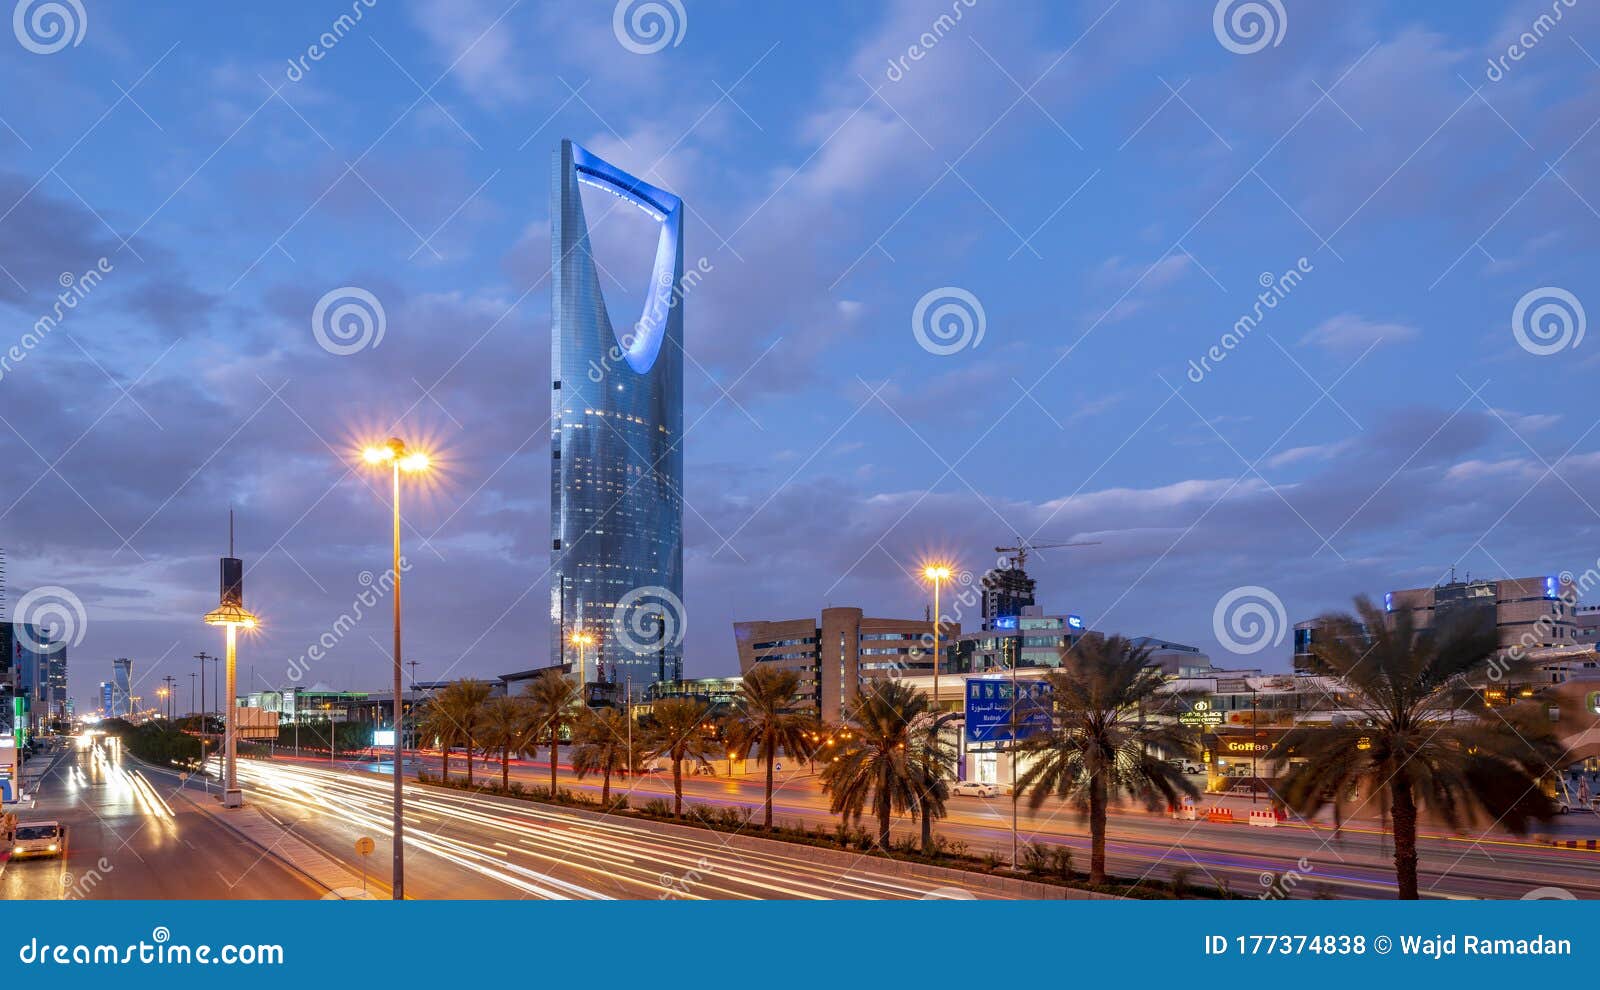 saudi arabia riyadh landscape at blue hour - riyadh tower kingdom centre daylight - kingdom tower Ã¢â¬â riyadh skyline - burj al-